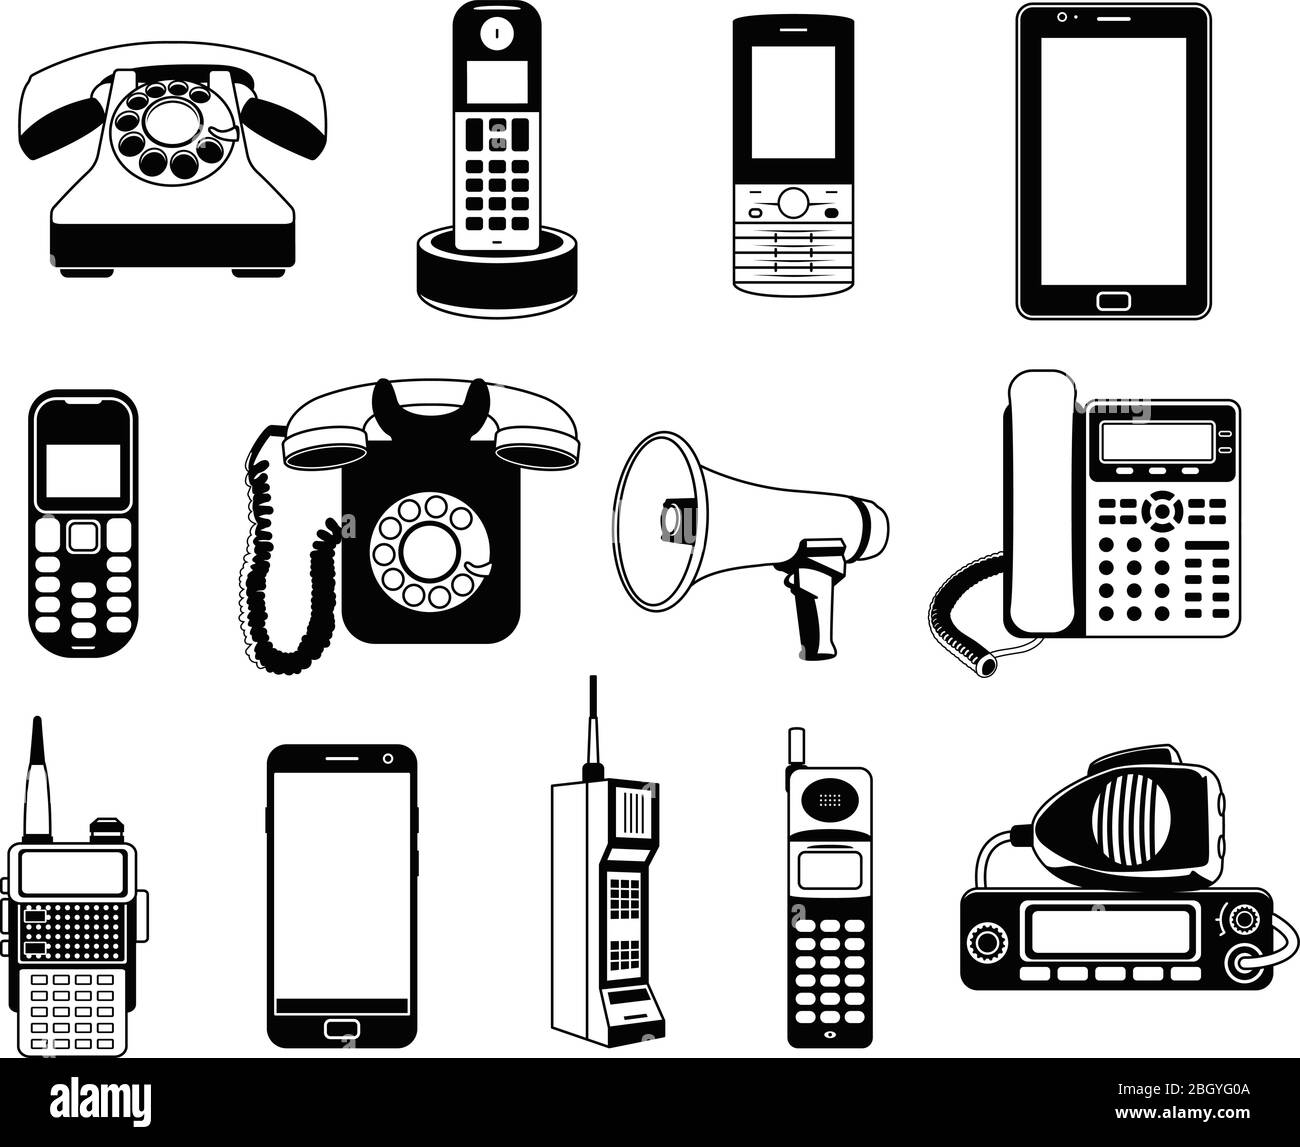 Silhouette von Telefonen und Smartphones. Vektor-Schwarzweißbilder. Abbildung von Telefon und Smartphone, Gerät Kommunikationsgerät Stock Vektor